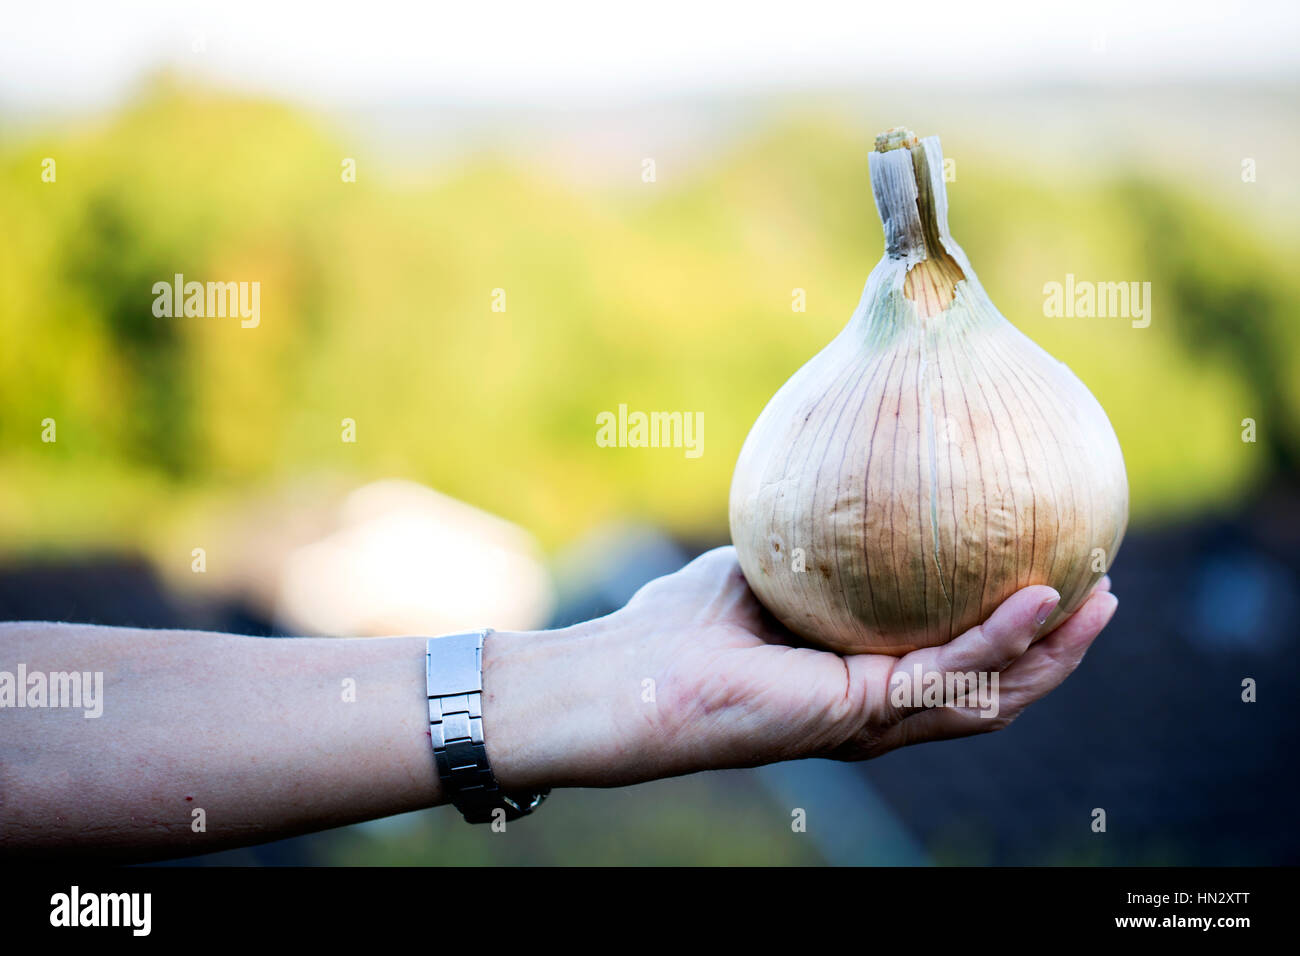 Una mujer sostiene una gran cebolla parda de origen, Allium cepa, en la palma de su mano. La verdura de bulbo se ha cultivado en el jardín de la mujer Foto de stock